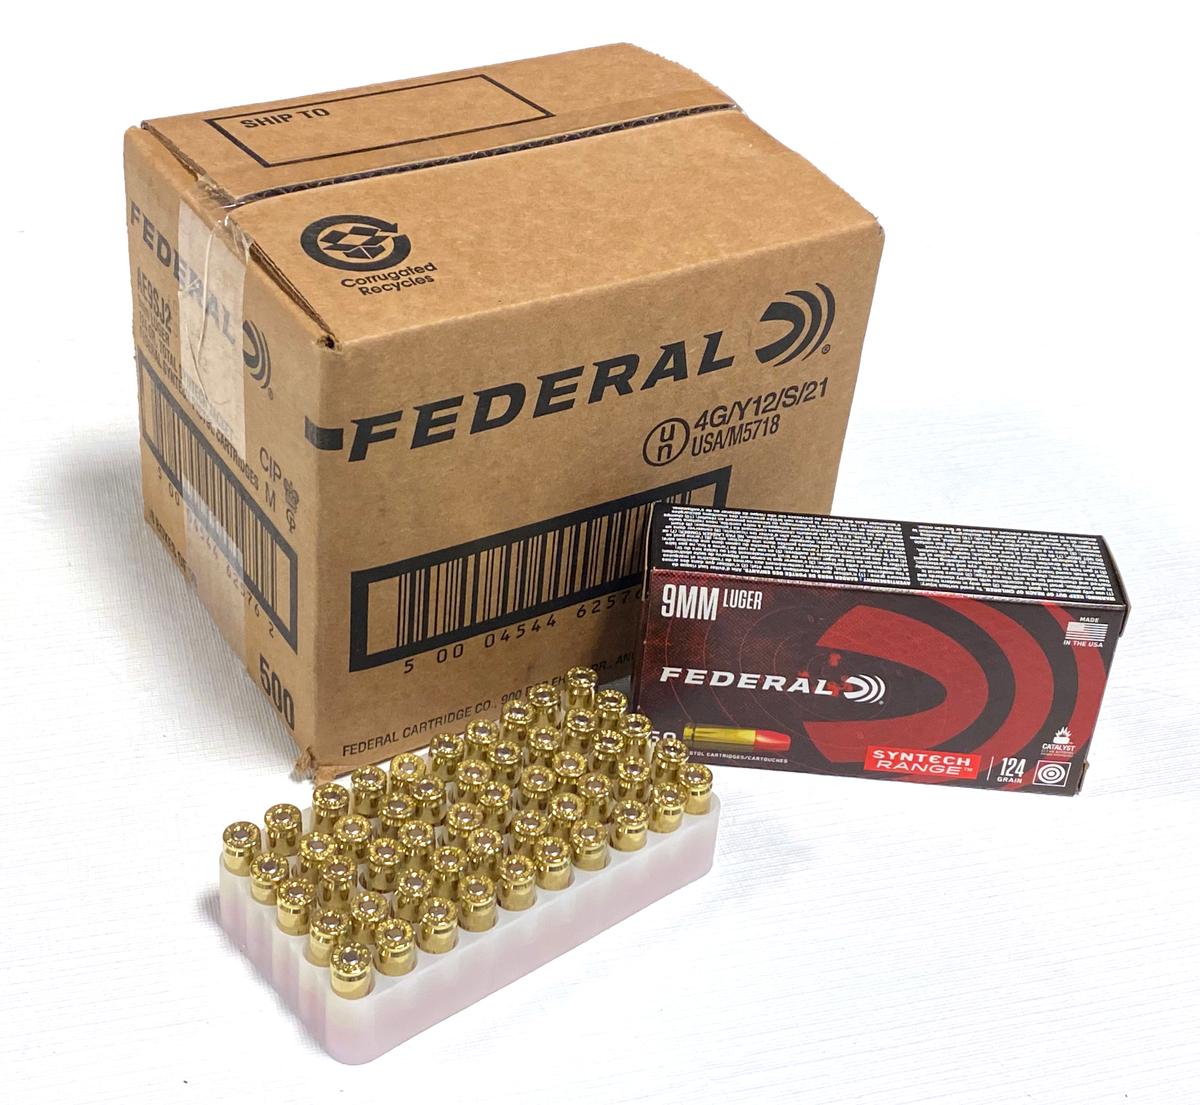 NIB Sealed Case of 500rds. of 9mm Federal 124gr. Brass Ammunition